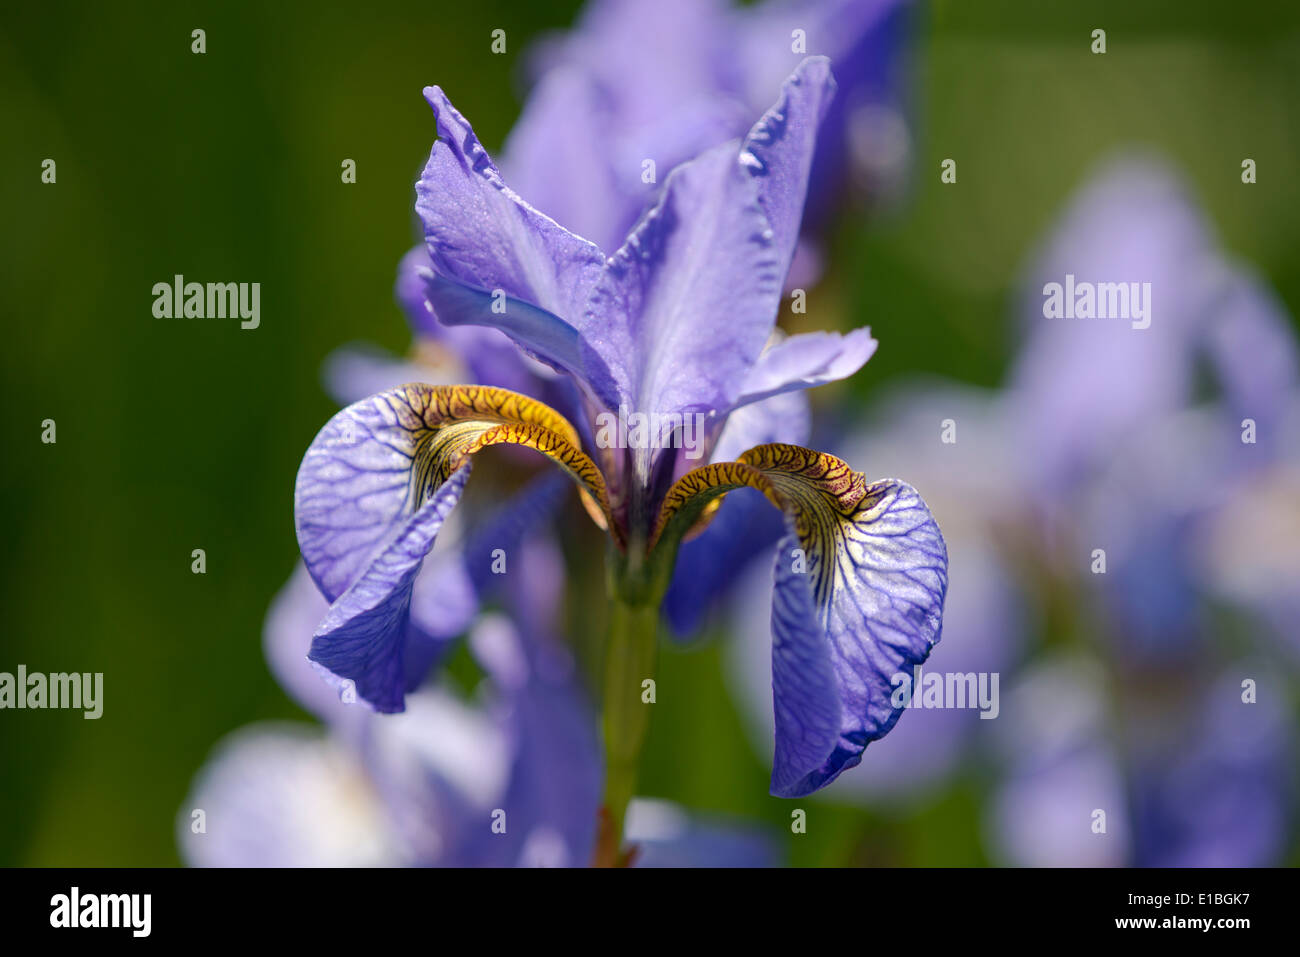 Iris robusta "Gerald Darby' in RBC paesaggi acquatici giardino alla RHS Chelsea Flower Show 2014, London REGNO UNITO Foto Stock